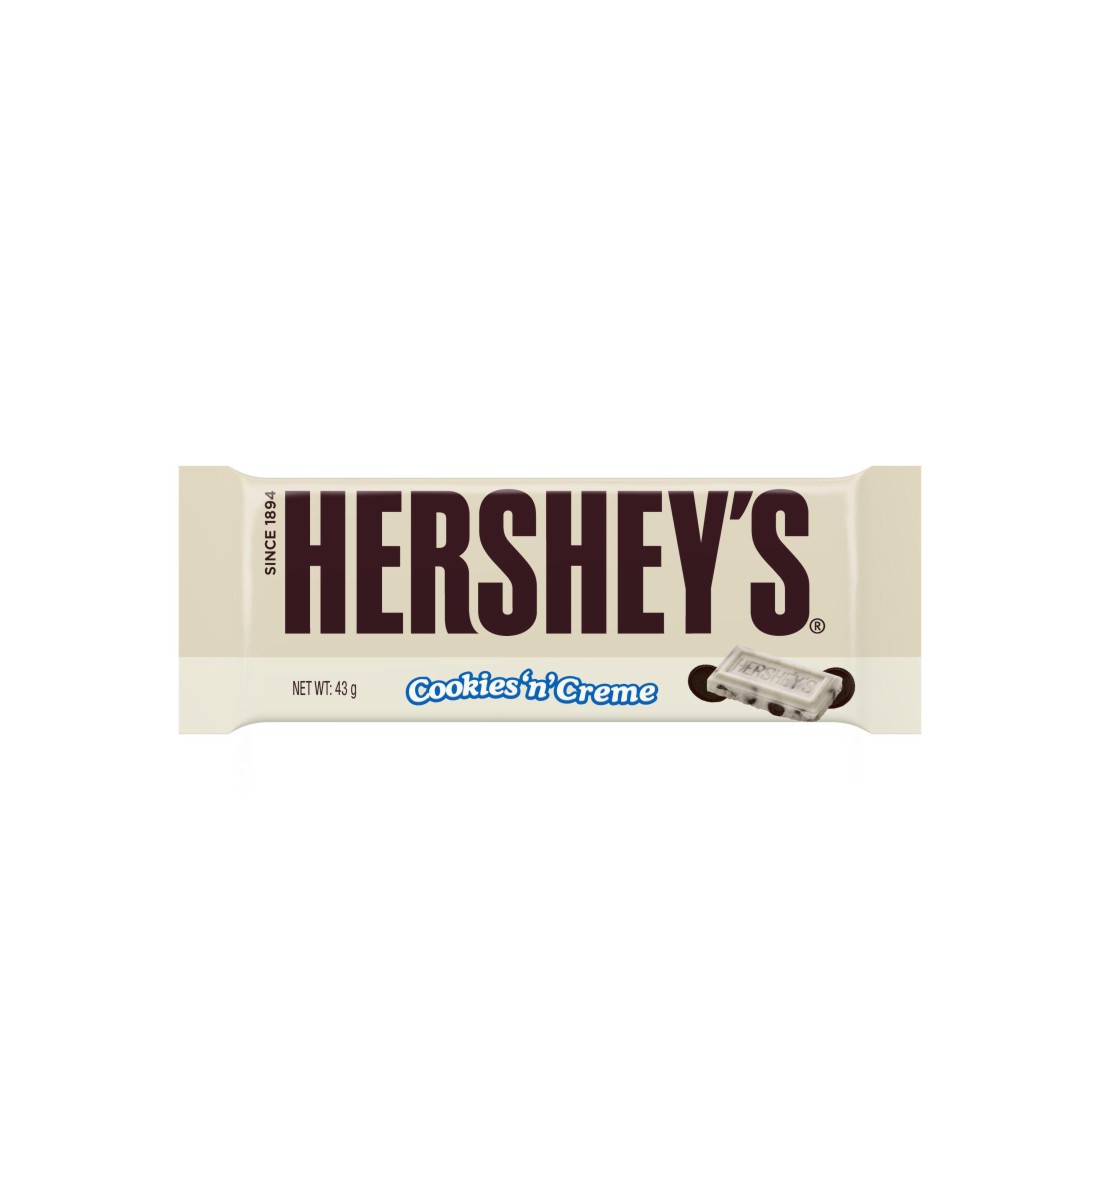 Hersheys Cookies’n’Creme 43 g bauturialcoolice.ro